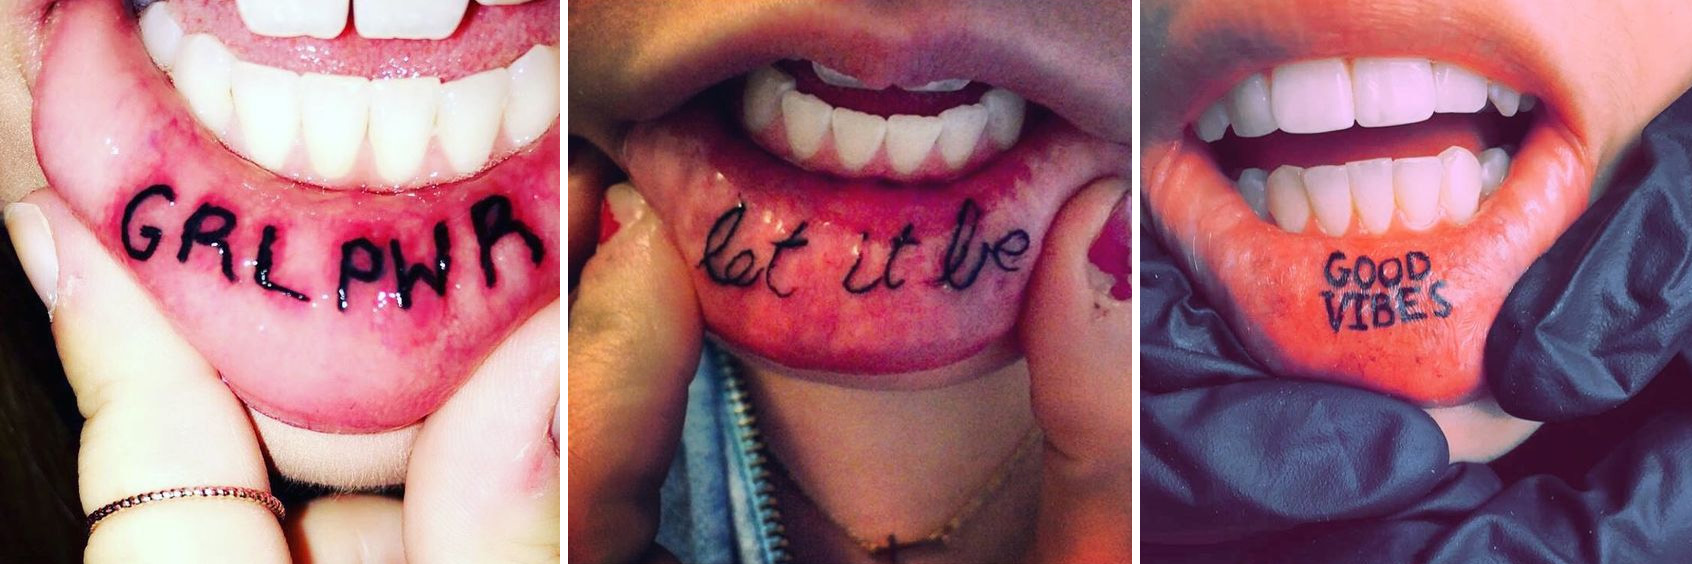 A száj belső része is tetoválható